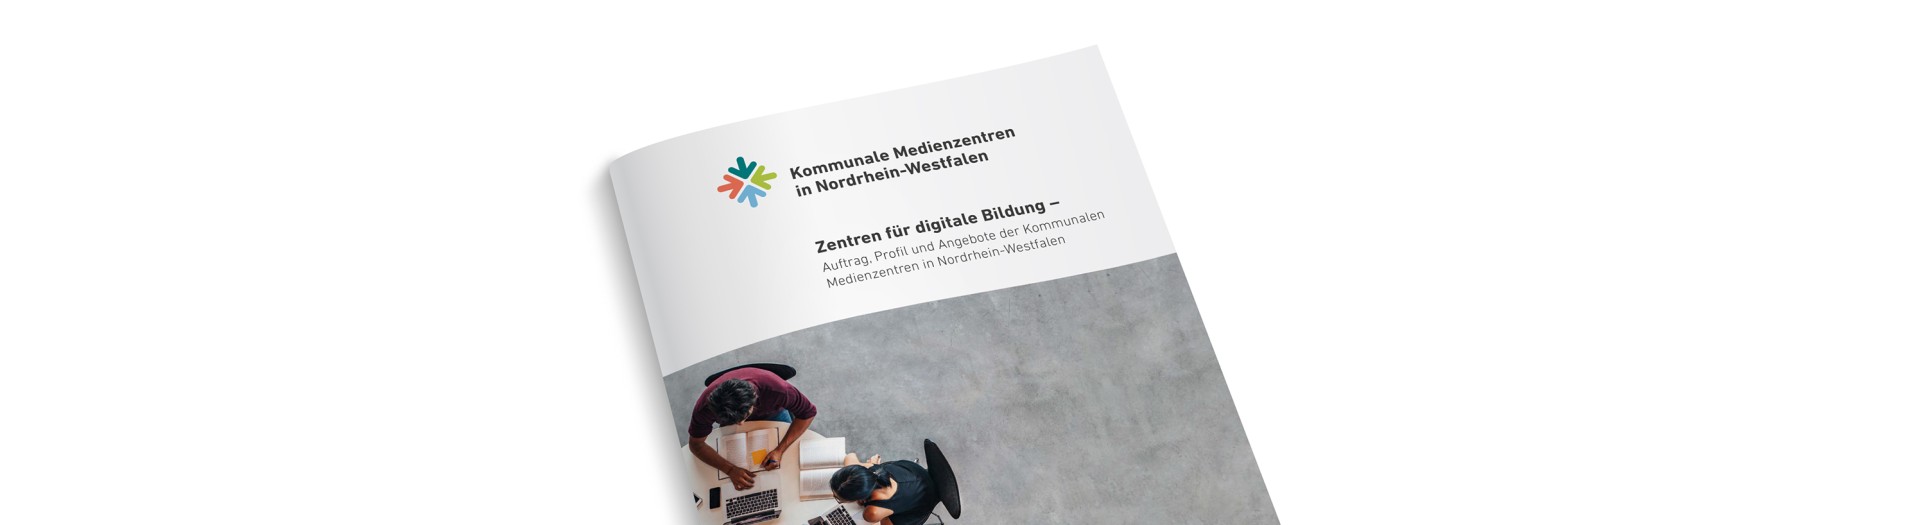 Broschüre der Kommunalen Medienzentren NRW mit dem Titel "Zentren für digitale Bildung"